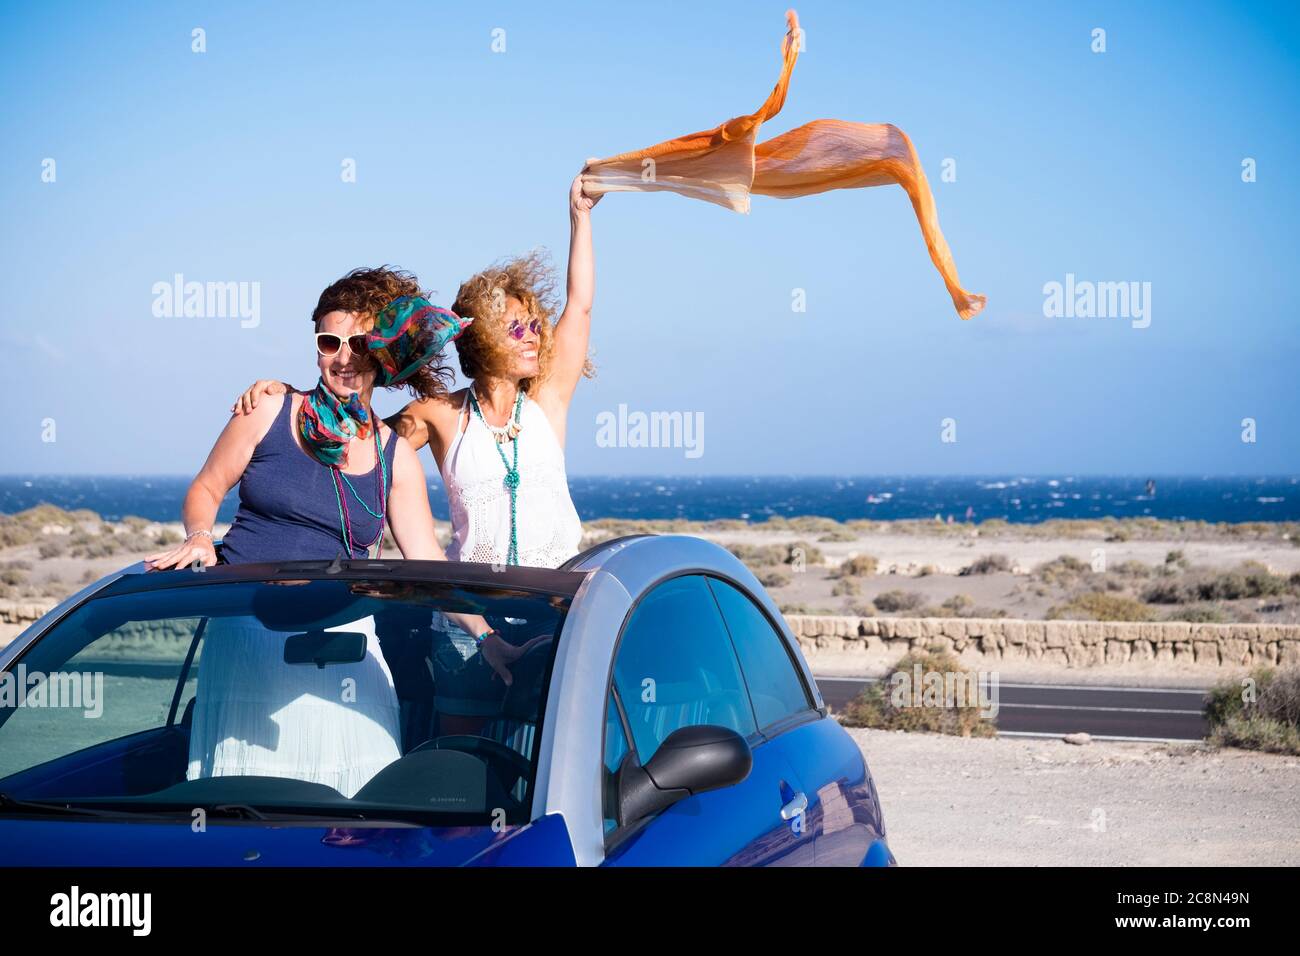 Deux amies adultes se tiennent debout à l'intérieur d'une voiture convertible. Profitez des vacances d'été en voiture - bleu océan et ciel à Backgrou Banque D'Images